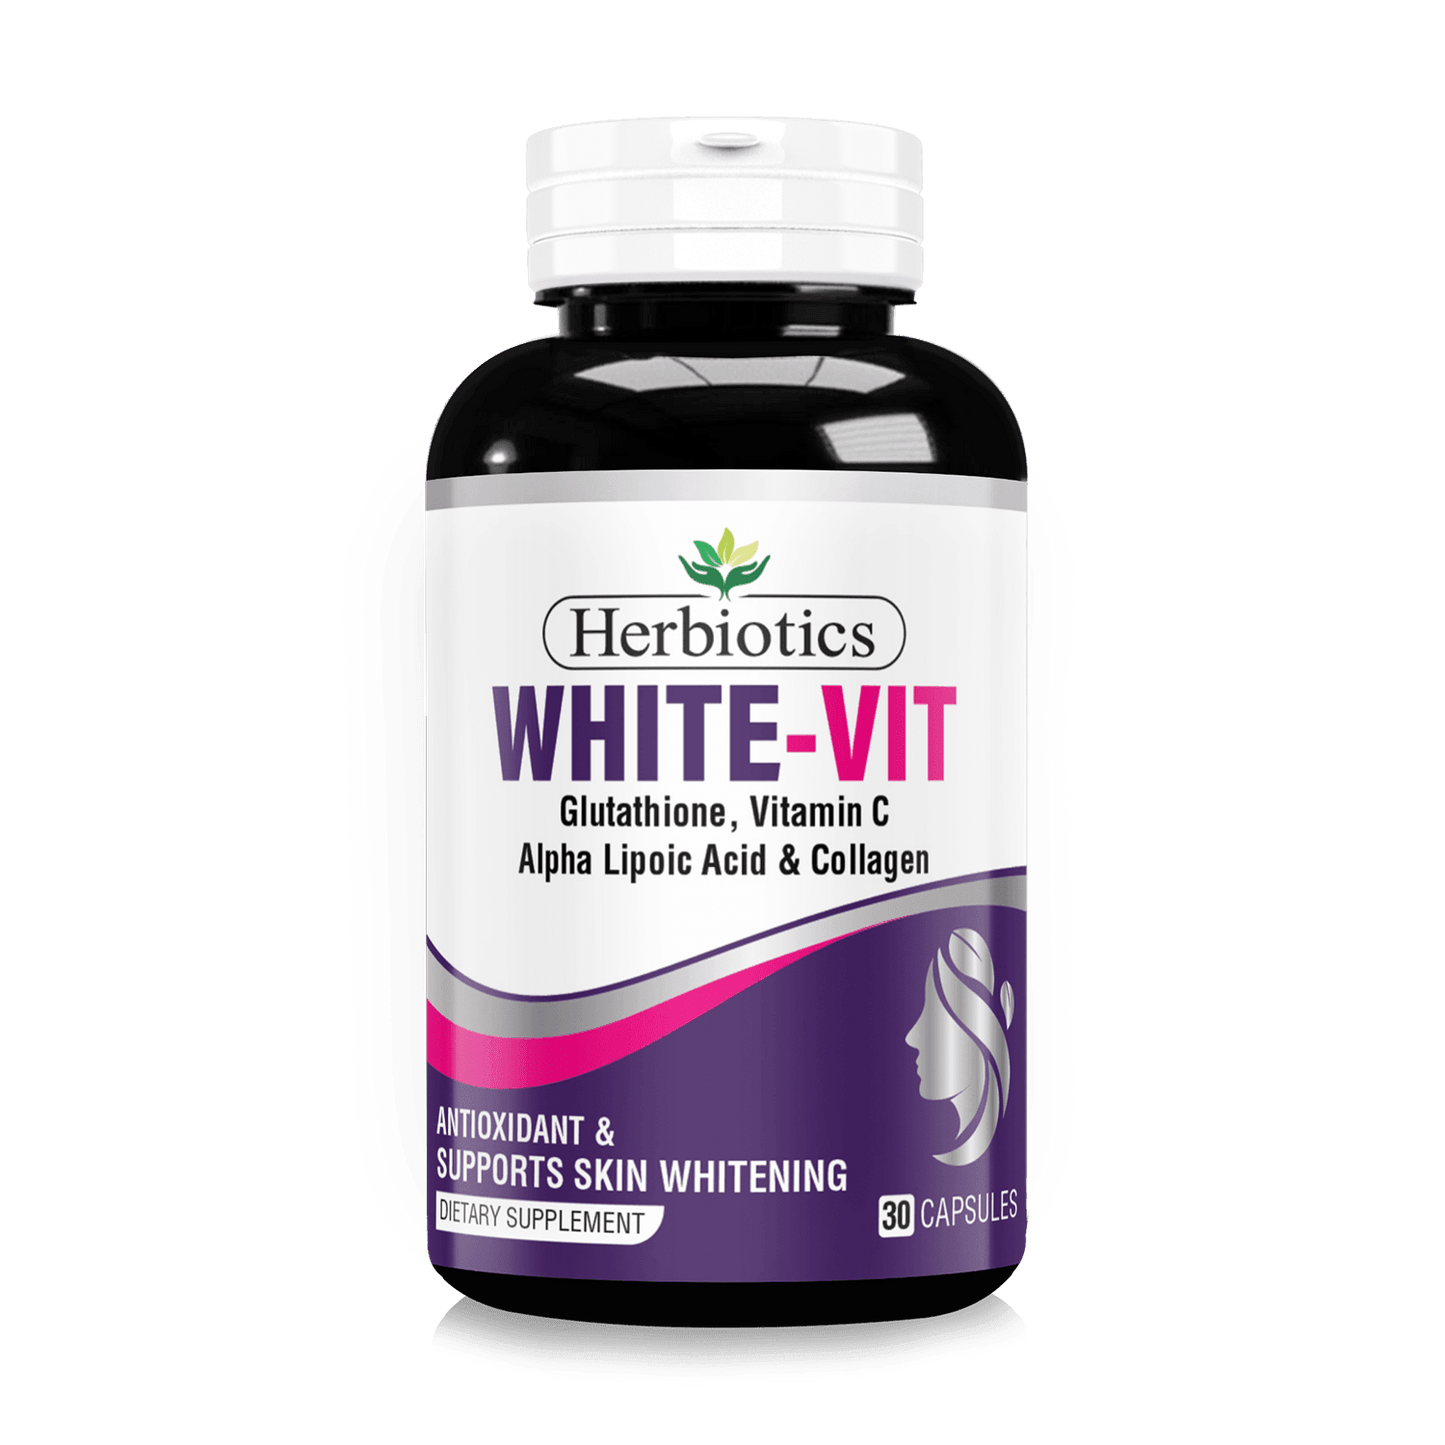 White-Vit - Healthifyme.pk